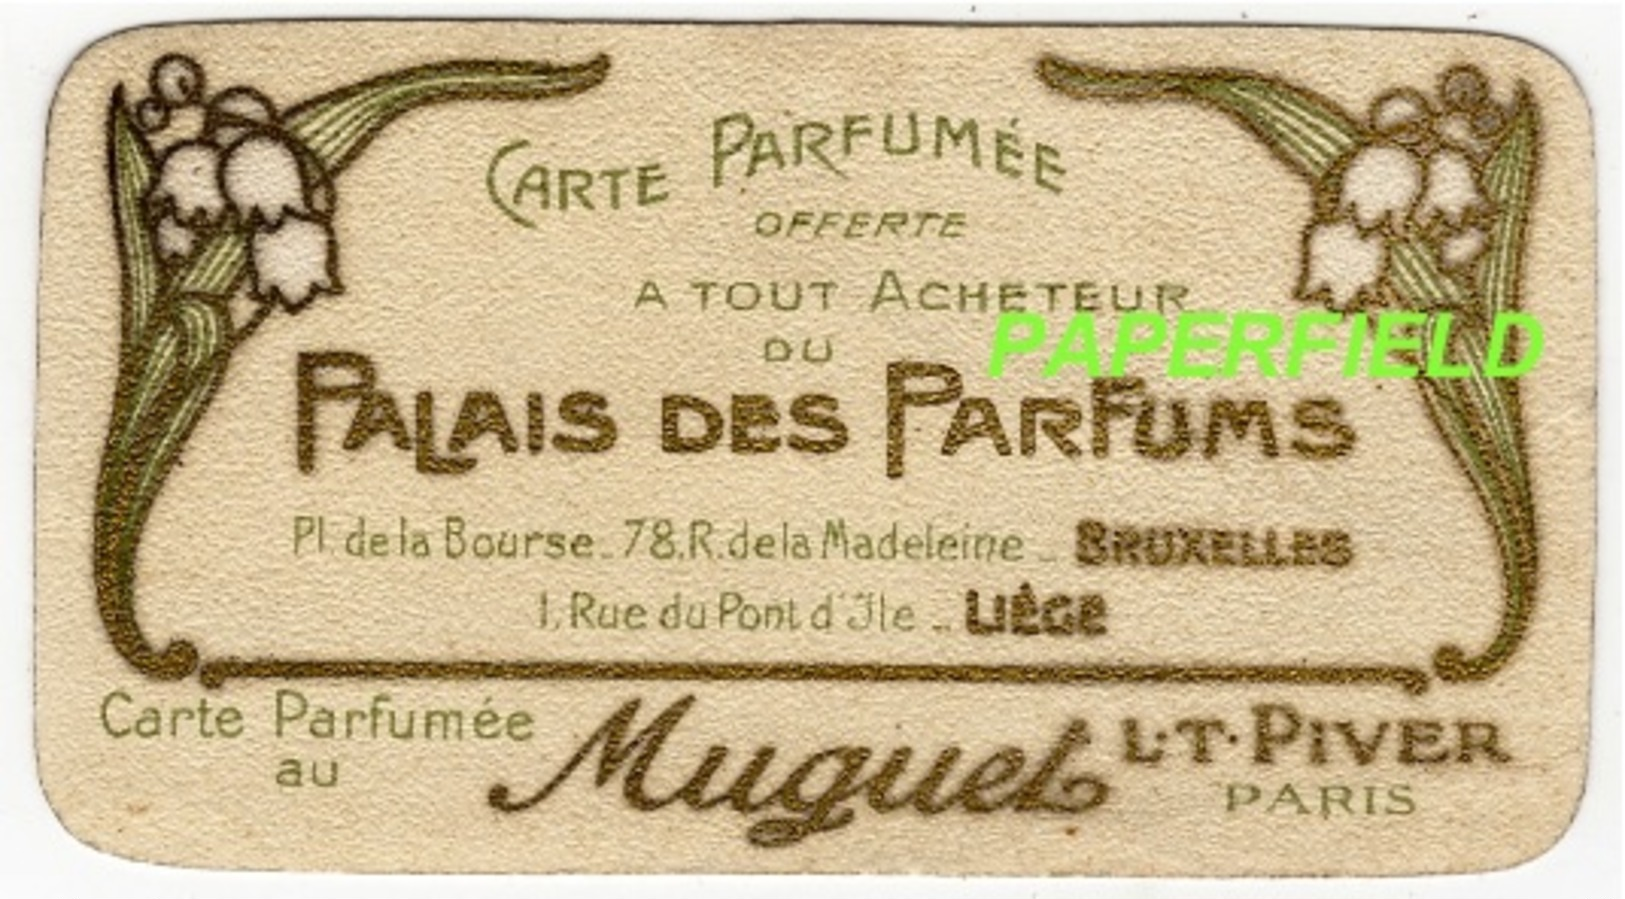 Carte Parfumée "Muguet"  L.T.PIVER - PARIS -offerte Par" Palais Des Parfums BRUXELLES-LIEGE"-verso Calendrier 1909/1910 - Anciennes (jusque 1960)